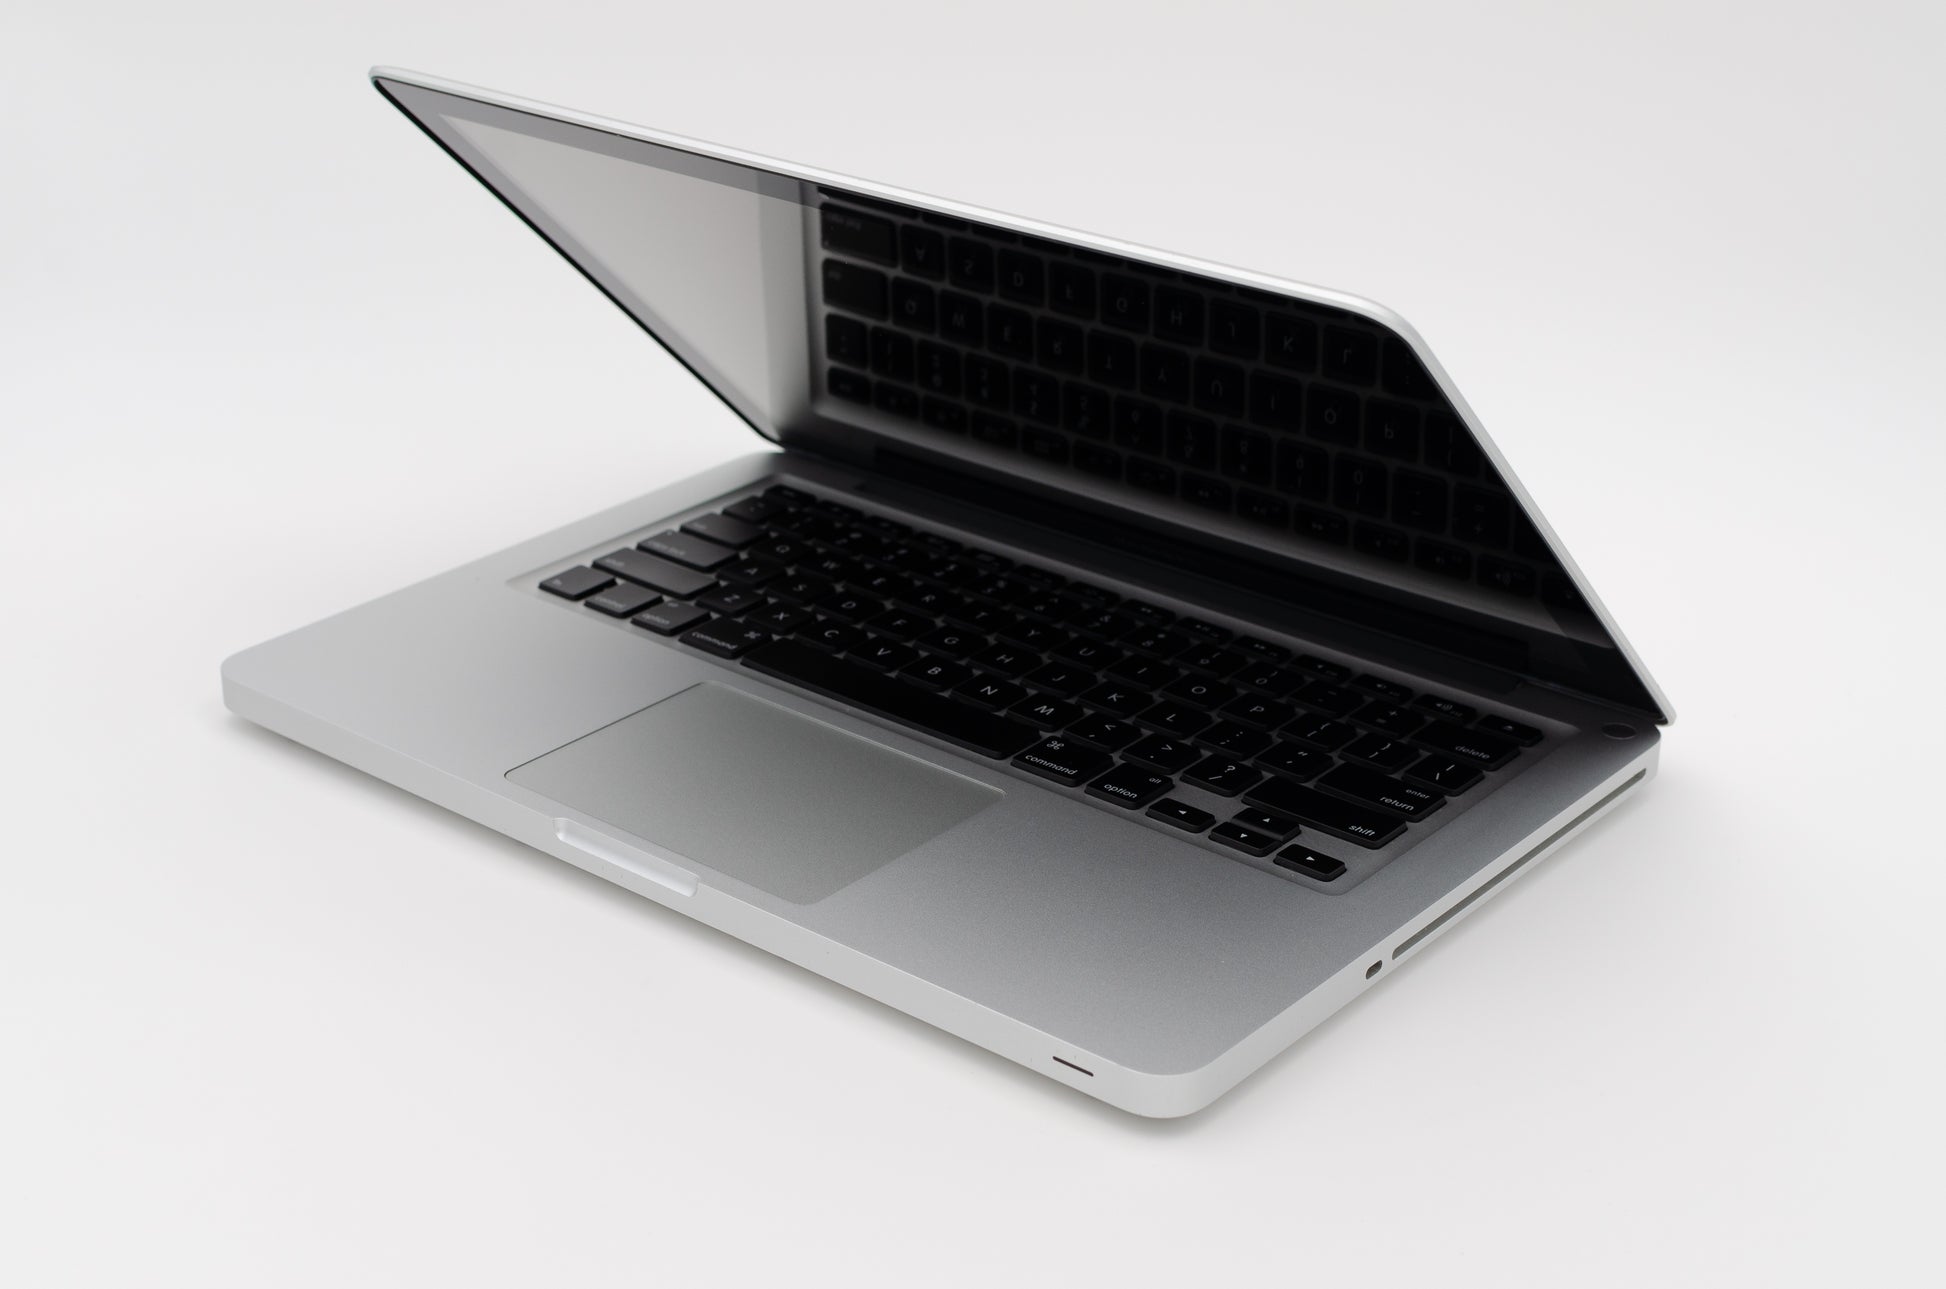 apple-late-2011-13.3-inch-macbook-pro-a1278-aluminum-dci5 - 2.4ghz processor, 4gb ram, hd 3000 - 348mb gpu-md313ll/a-5